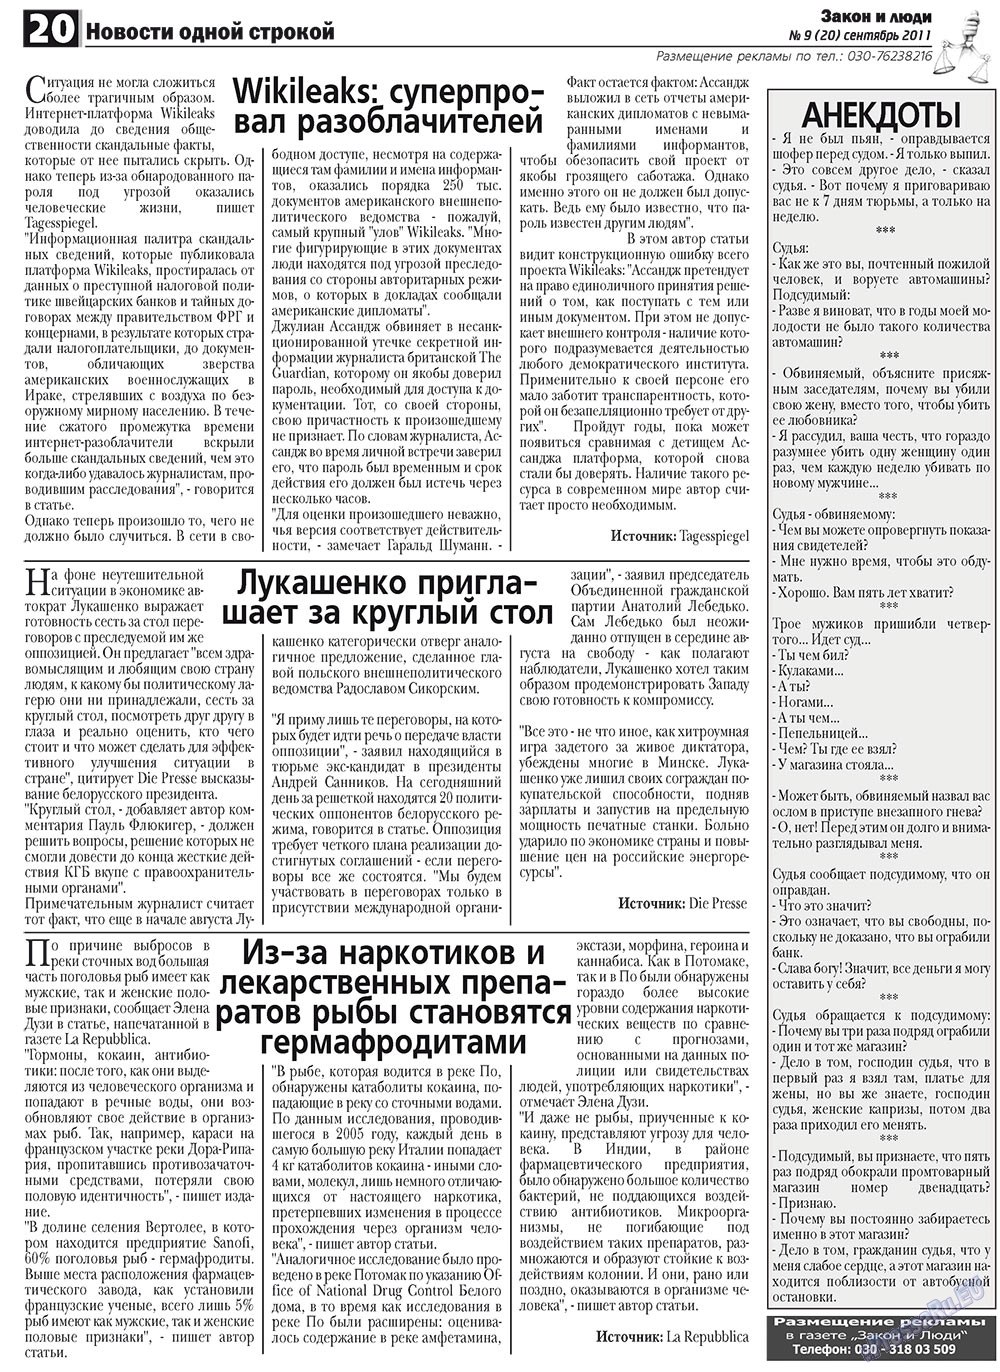 Закон и люди (газета). 2011 год, номер 9, стр. 20